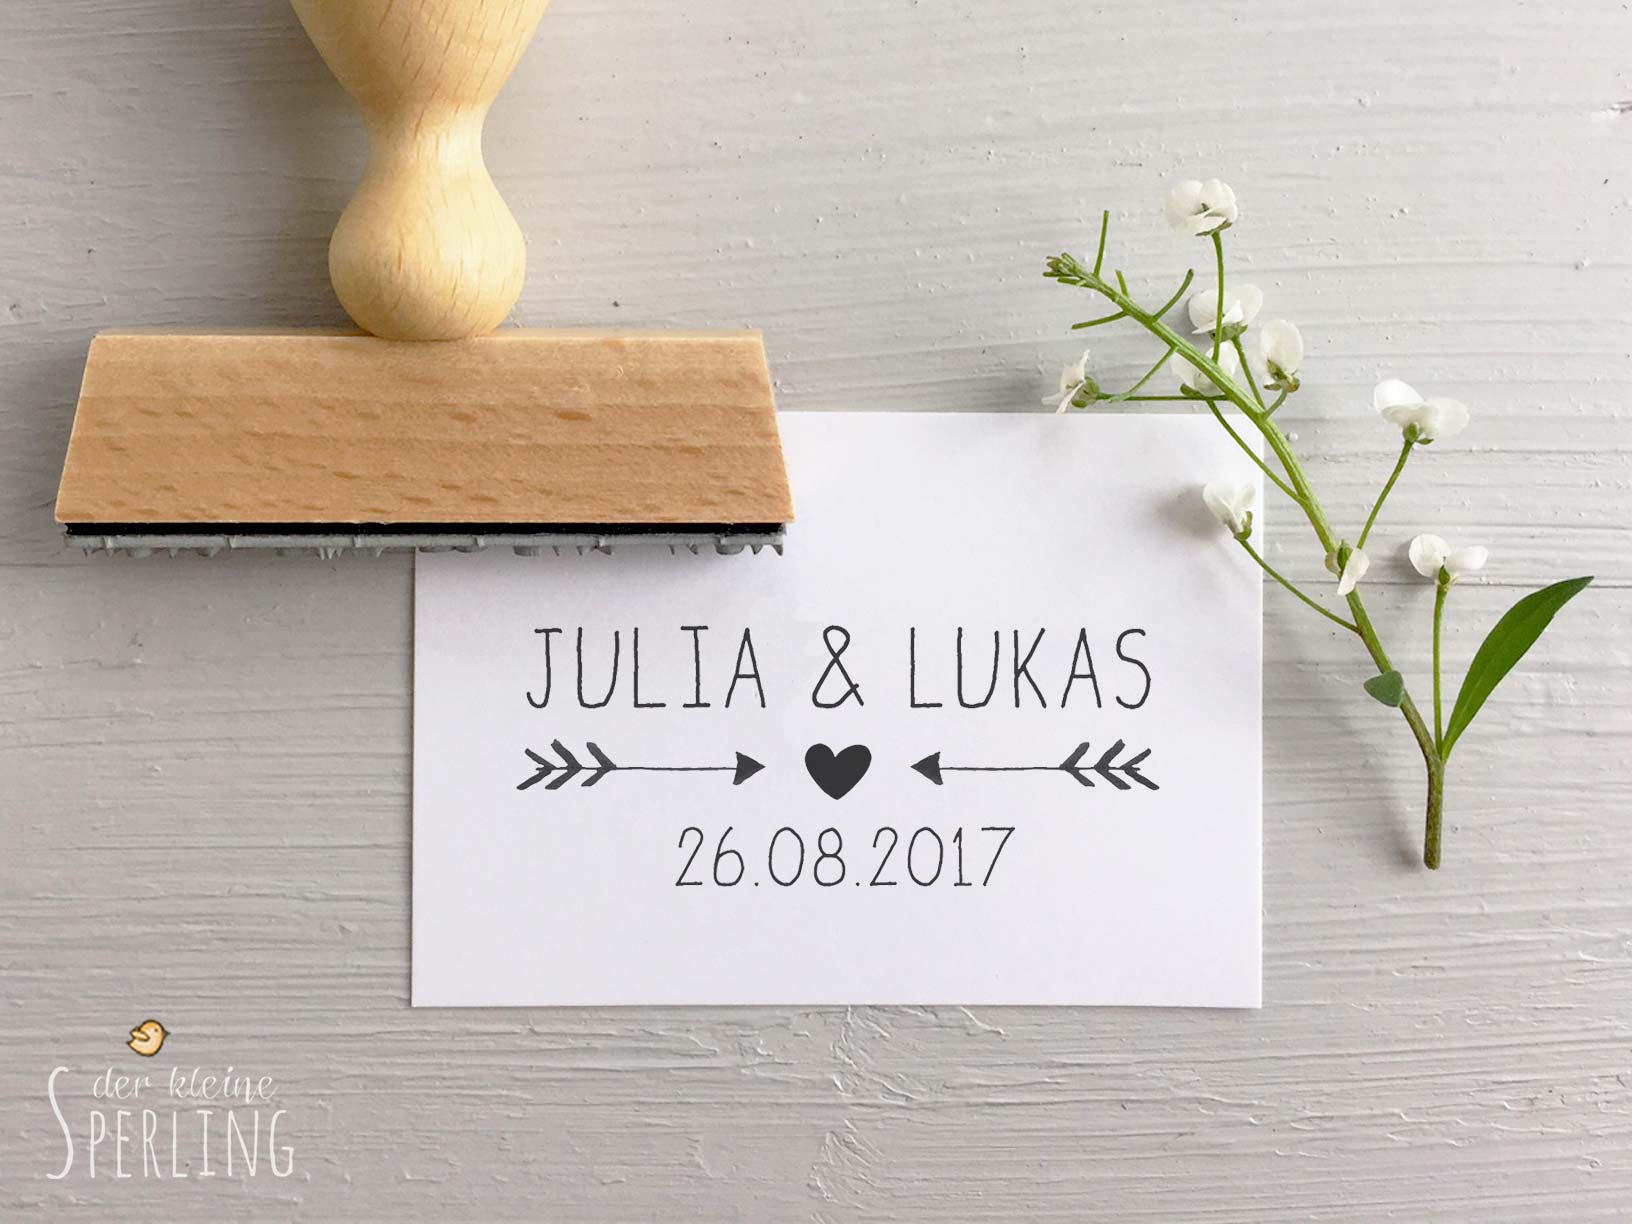 Stempel zur Hochzeit: Personalisiert mit Namen und Datum